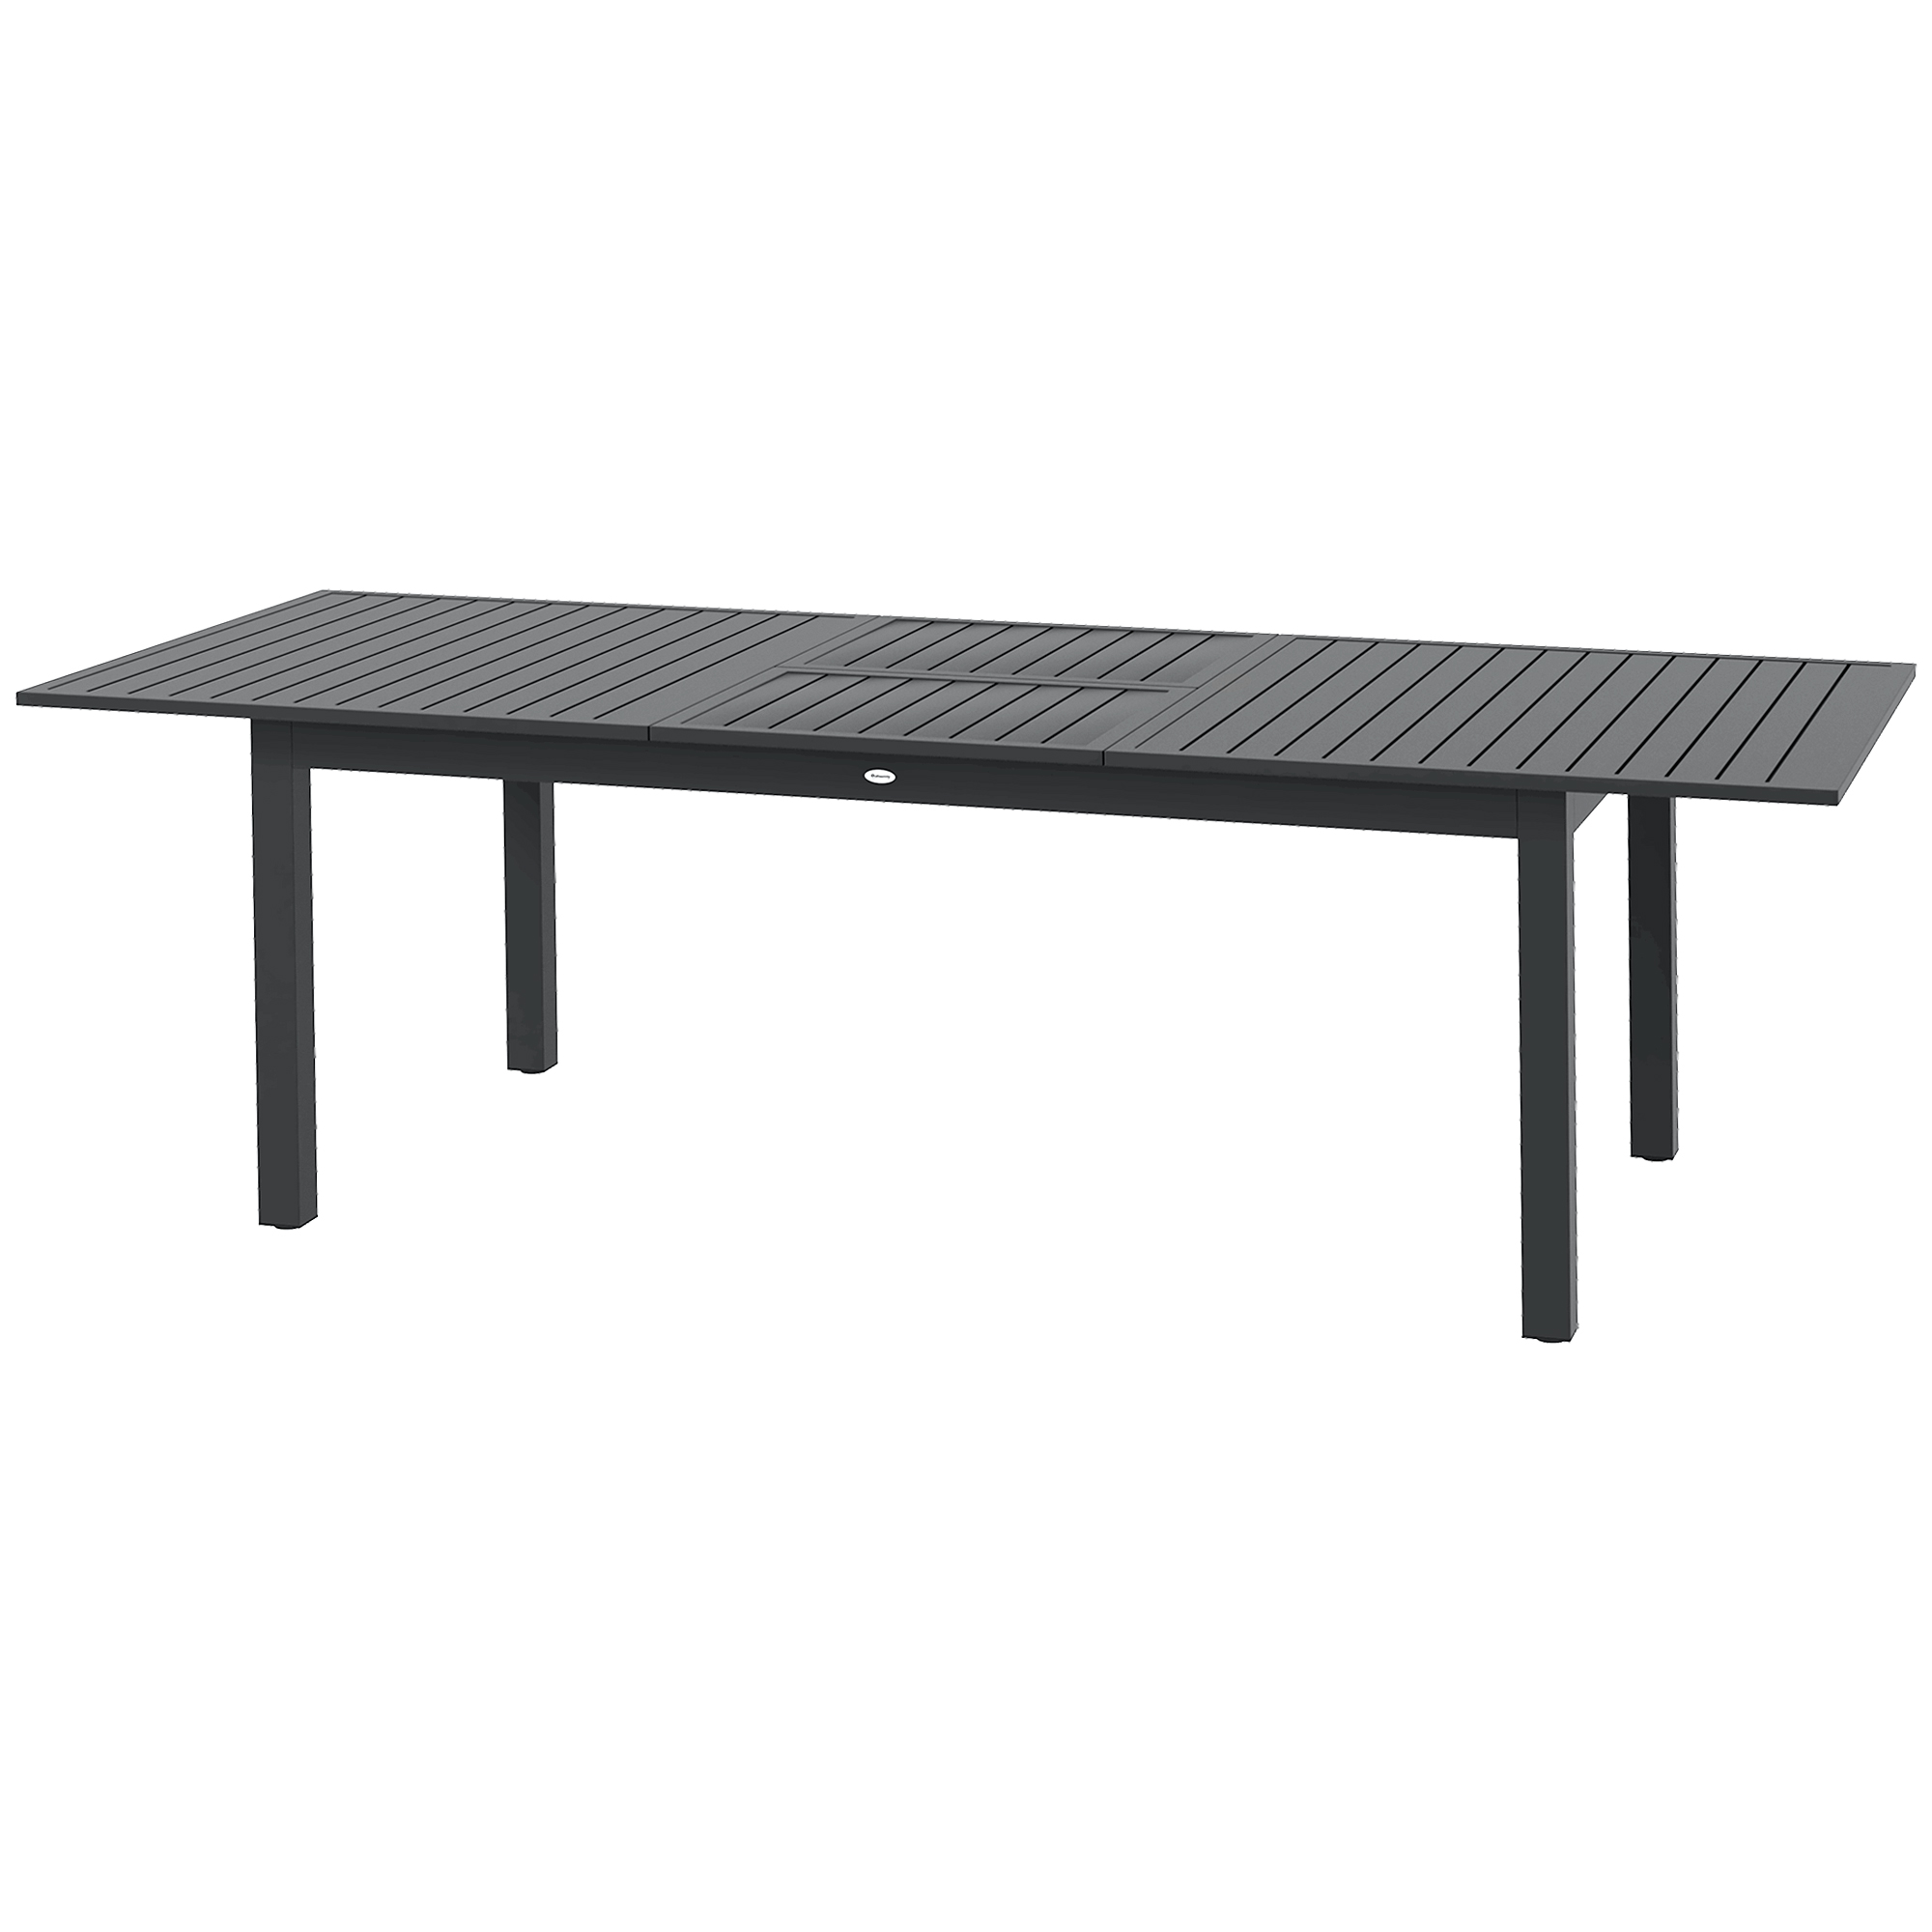 Τραπέζι εξωτερικού χώρου Outsunny για 8-10 άτομα επεκτάσιμο 180/240 cm σε ατσάλι και αλουμίνιο